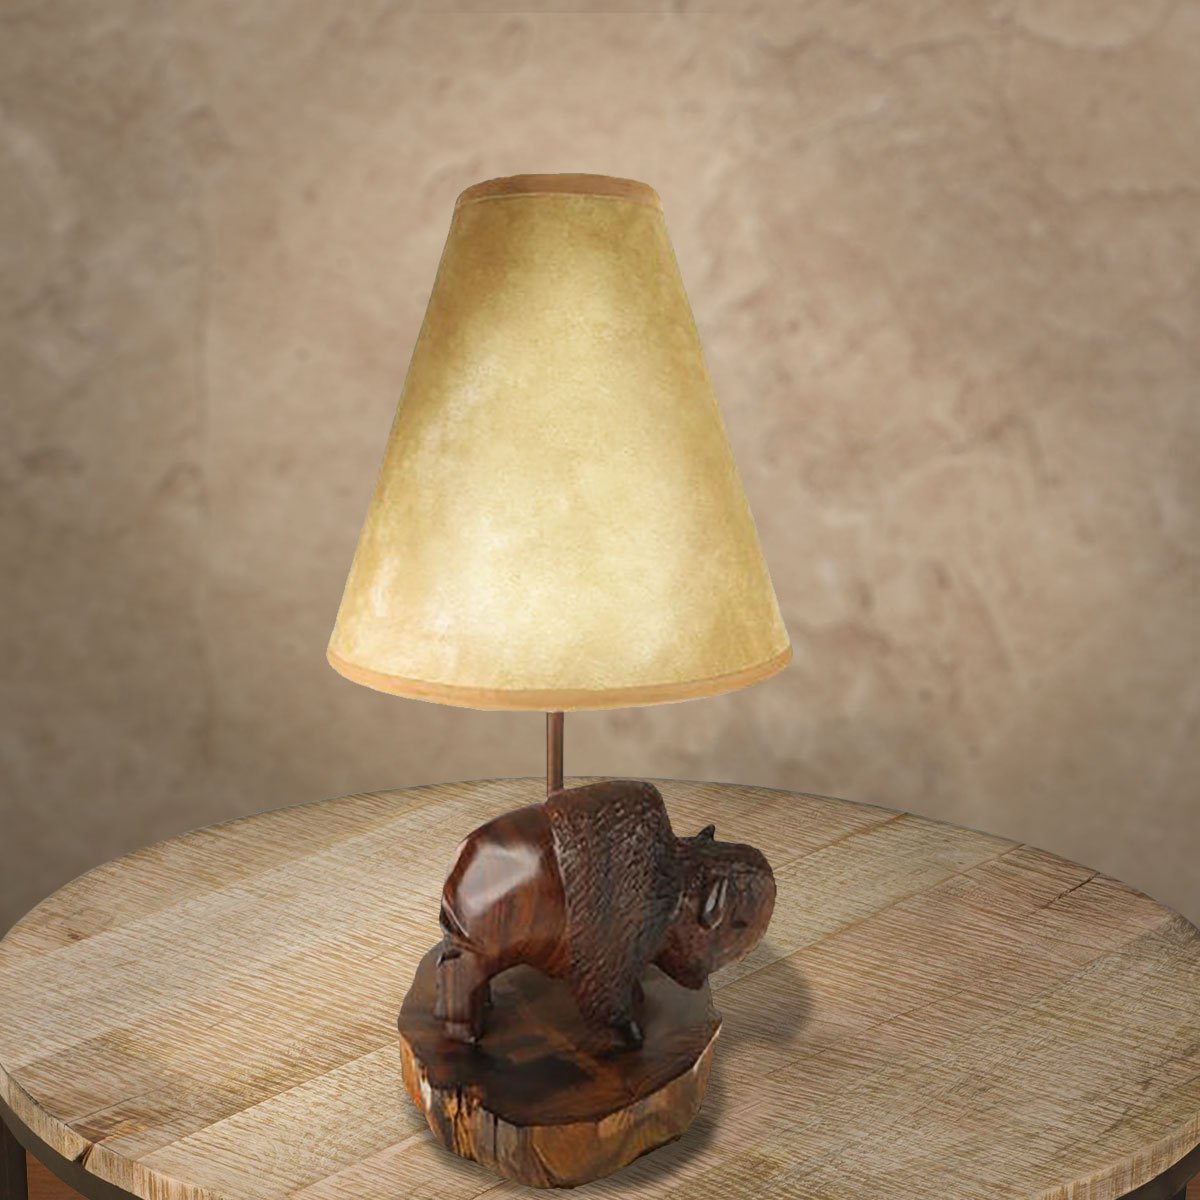 172013 - Buffalo Ironwood Vanity Lamp with Shade